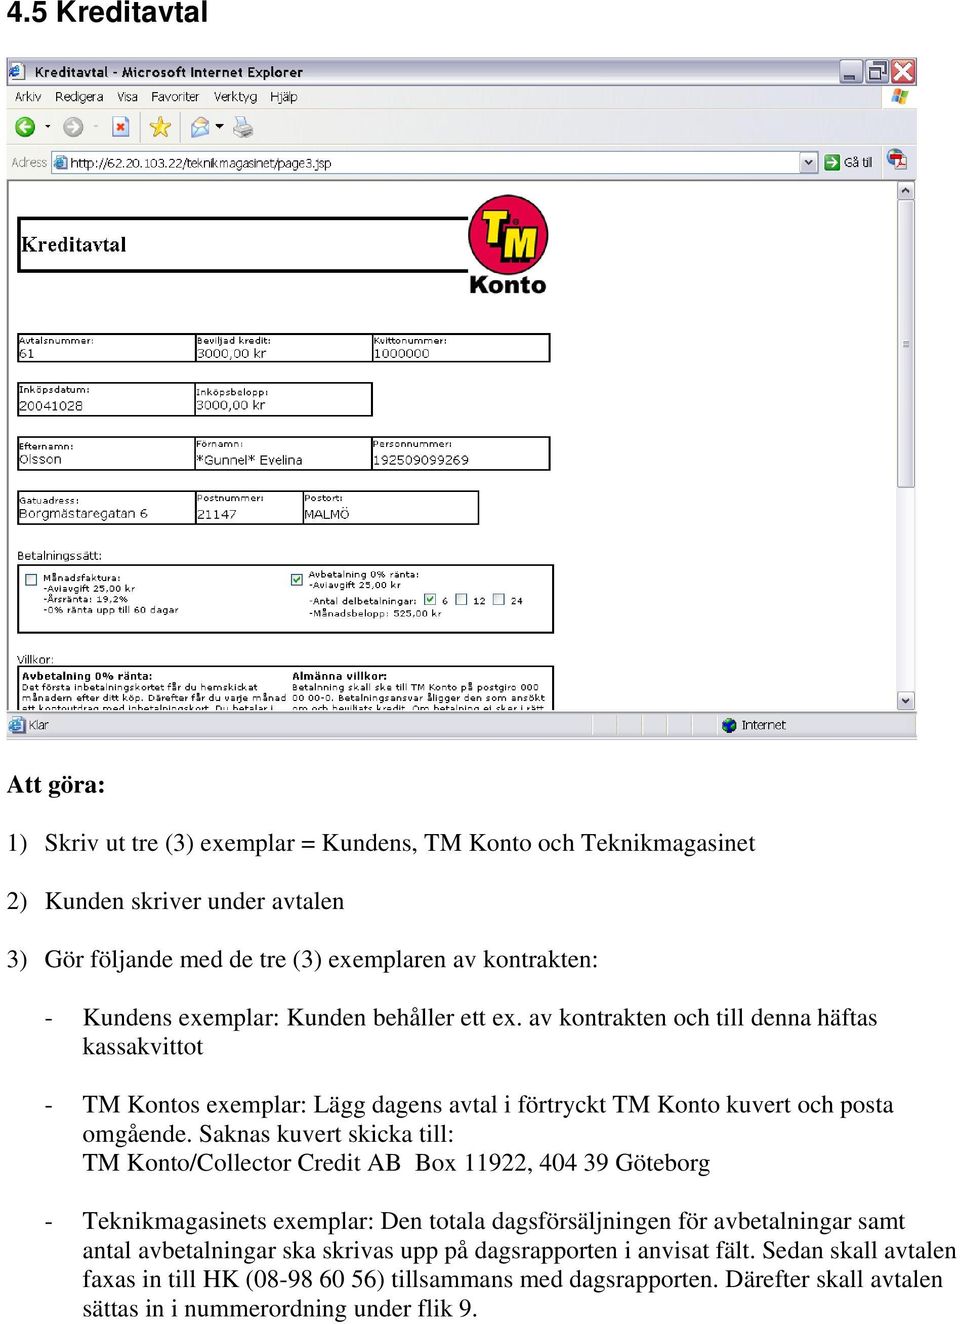 Saknas kuvert skicka till: TM Konto/Collector Credit AB Box 11922, 404 39 Göteborg - Teknikmagasinets exemplar: Den totala dagsförsäljningen för avbetalningar samt antal